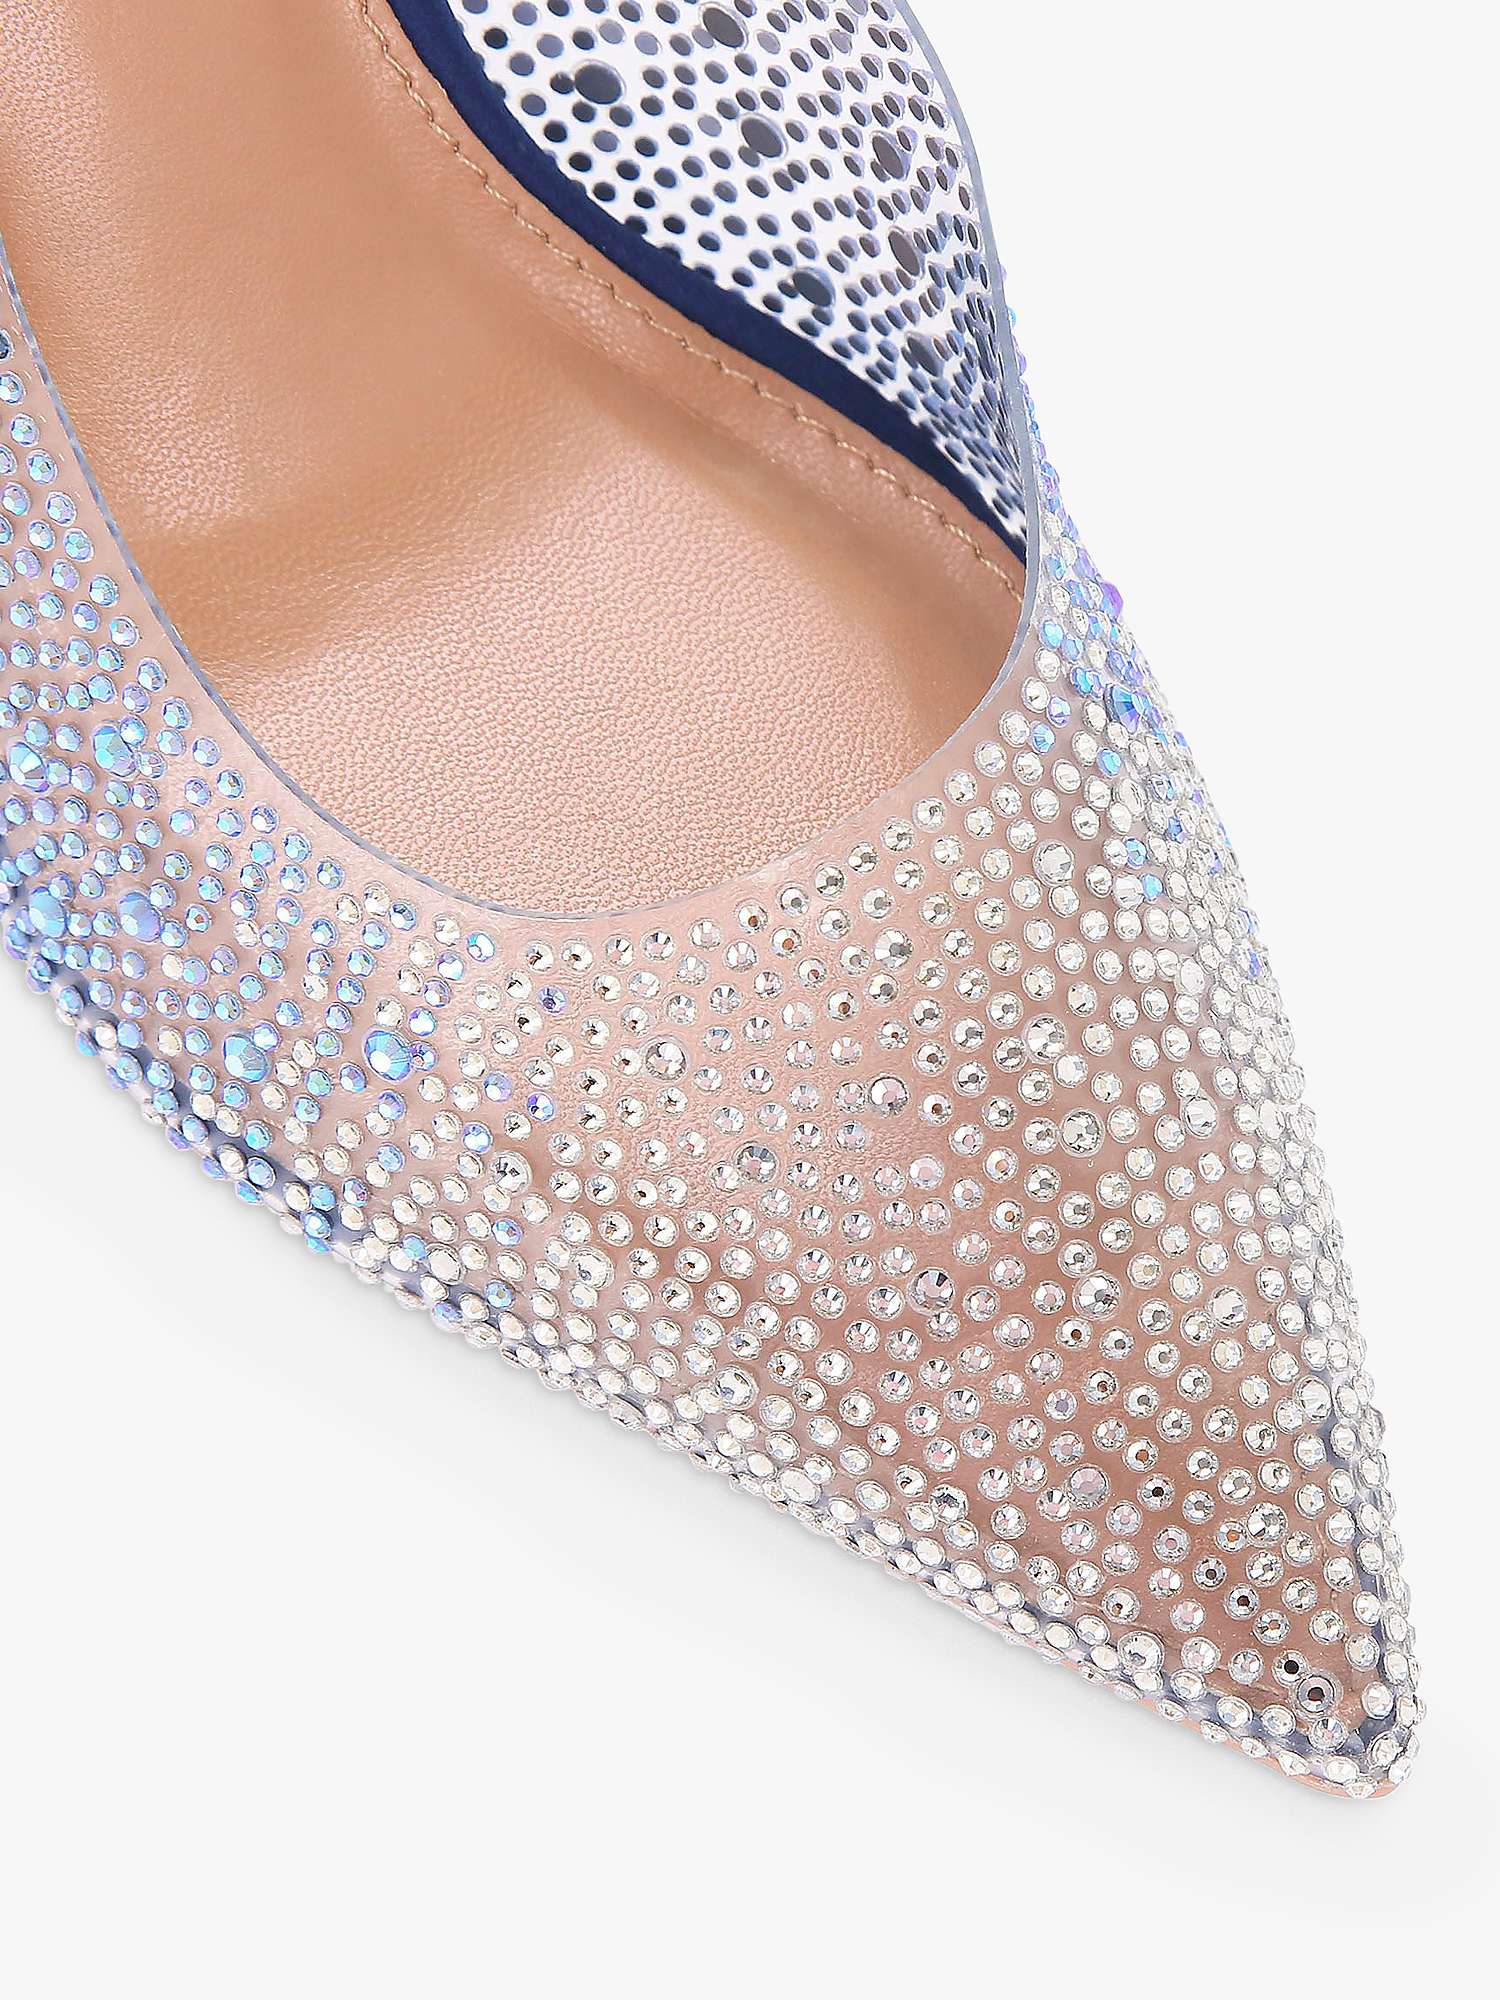 Buy Carvela Lovebird Embellished High Heel Court Shoes, Navy Blue Online at johnlewis.com